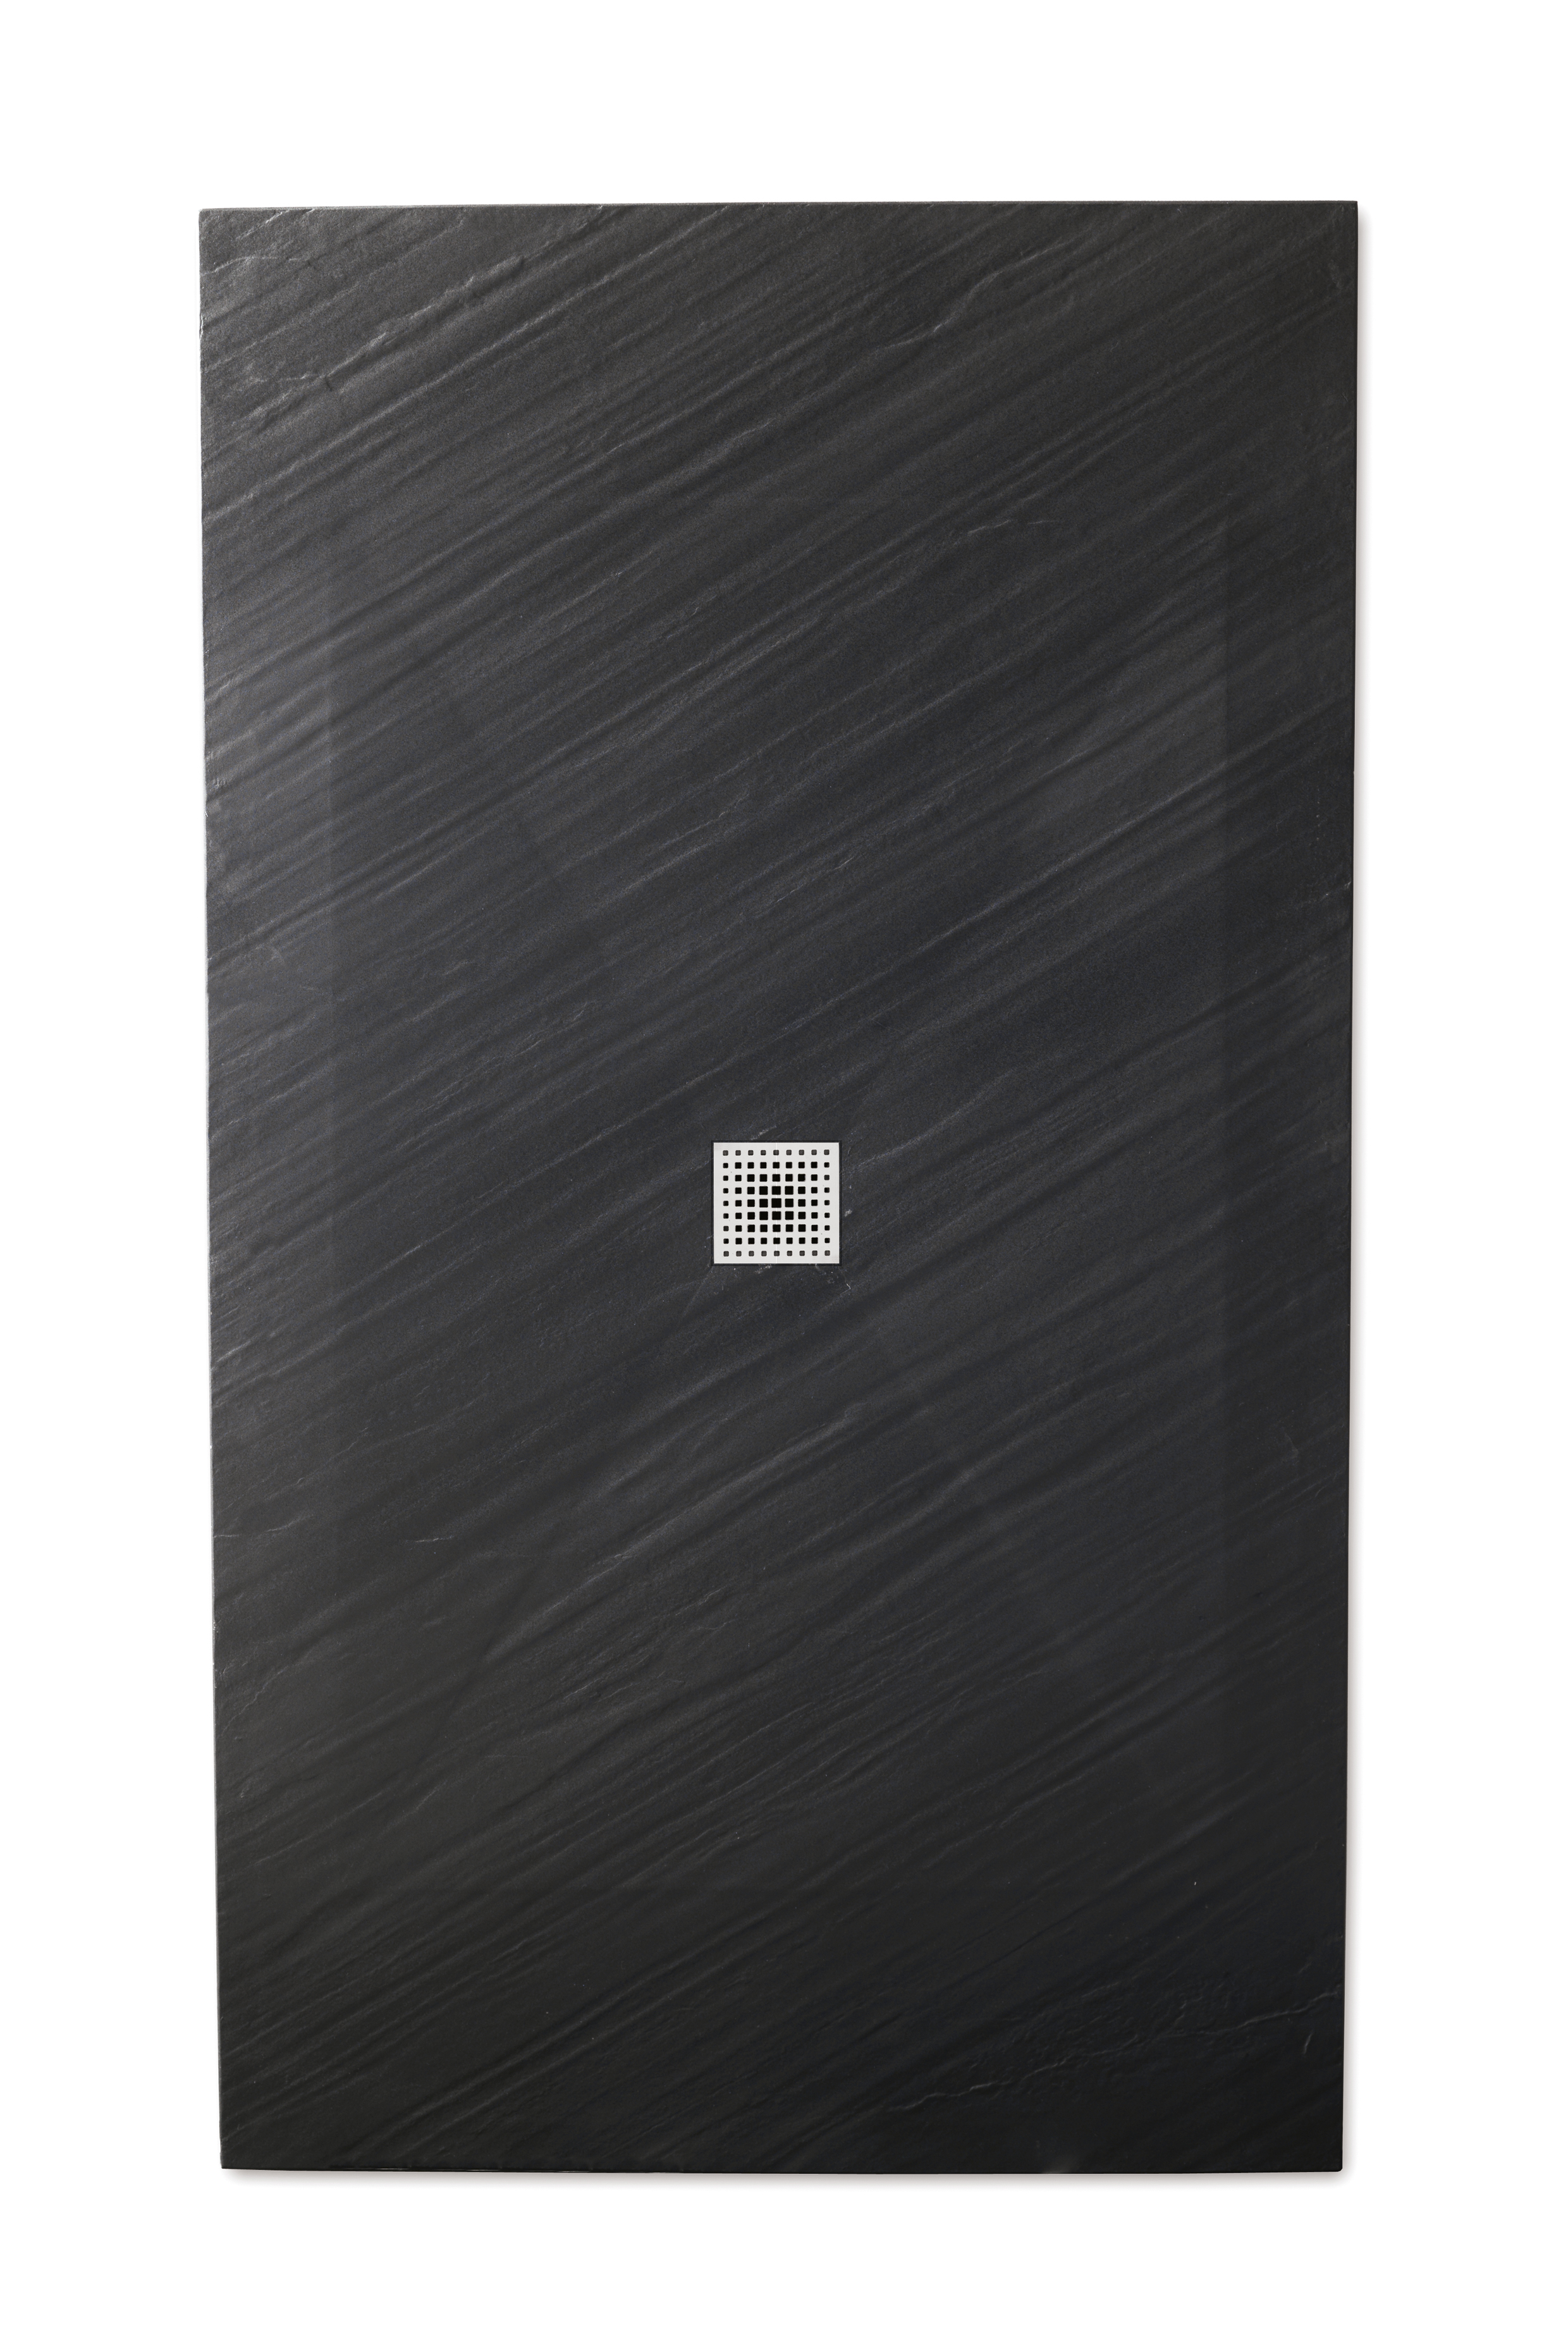 PIANA piatto doccia ultra flat 3 cm in Mineralstone 80x170 finitura nero - Bagno Italiano